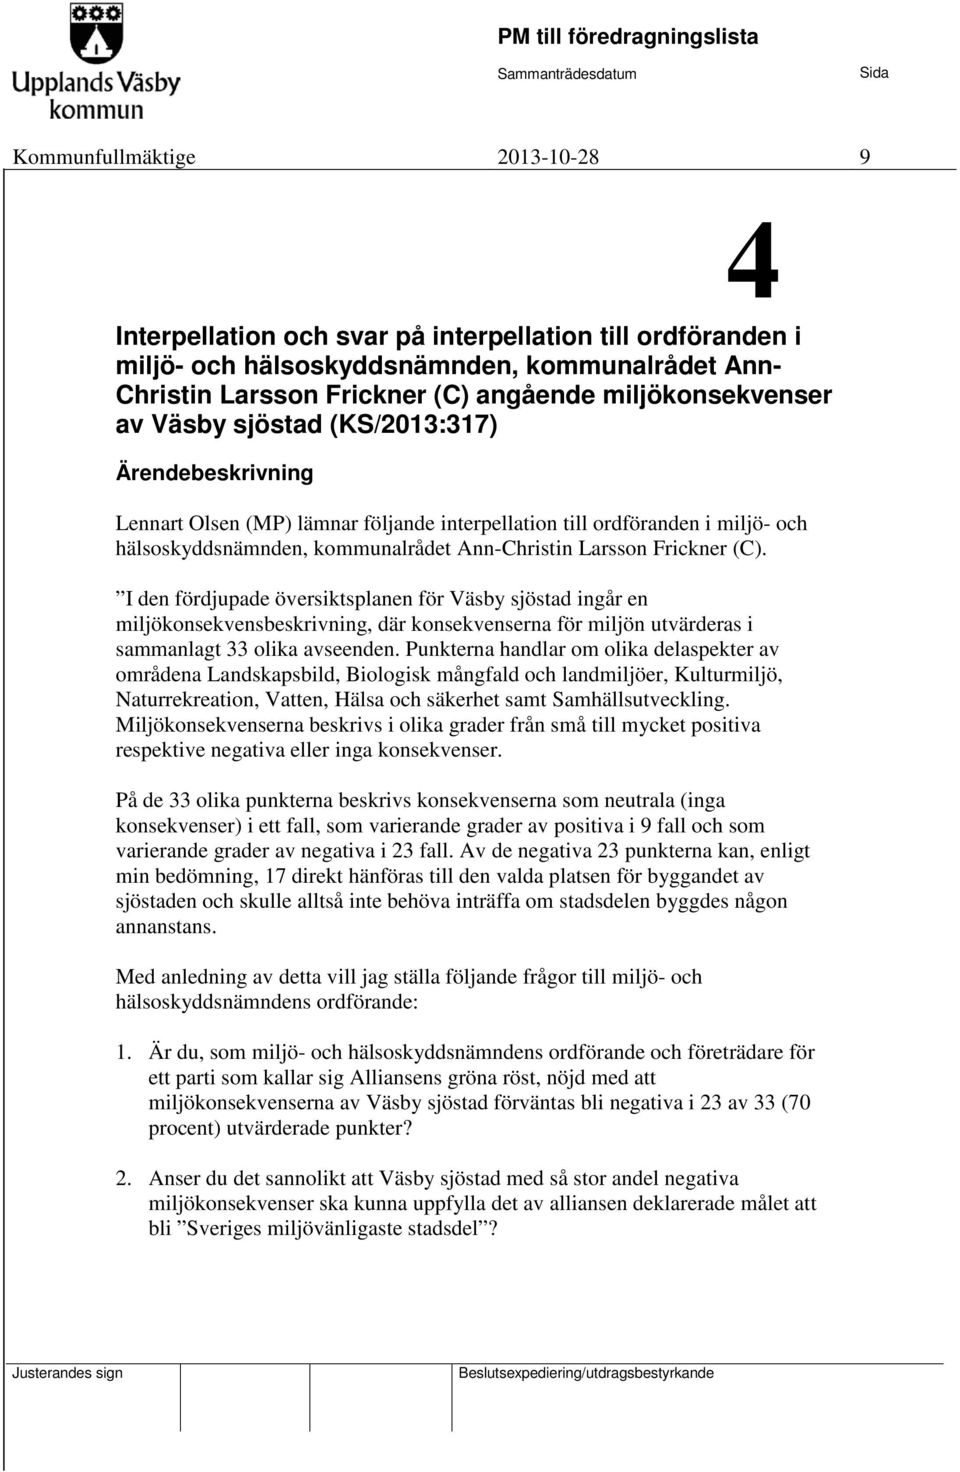 Larsson Frickner (C). I den fördjupade översiktsplanen för Väsby sjöstad ingår en miljökonsekvensbeskrivning, där konsekvenserna för miljön utvärderas i sammanlagt 33 olika avseenden.